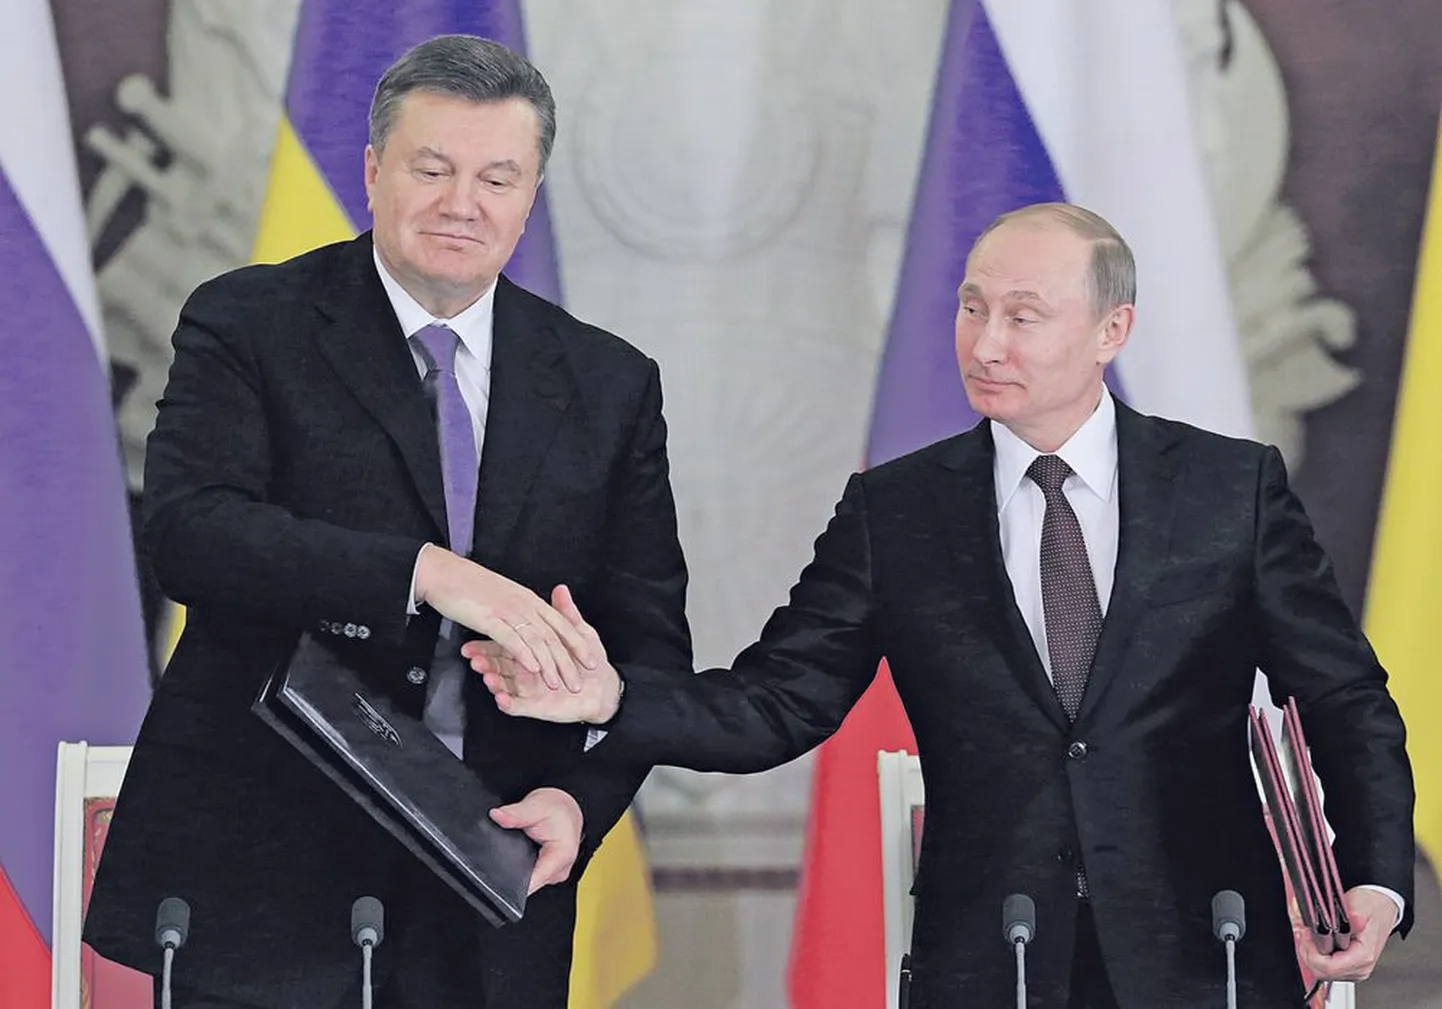 17 декабря состоялись переговоры президента РФ Владимира Путина (справа) и президента Украины Виктора Януковича.